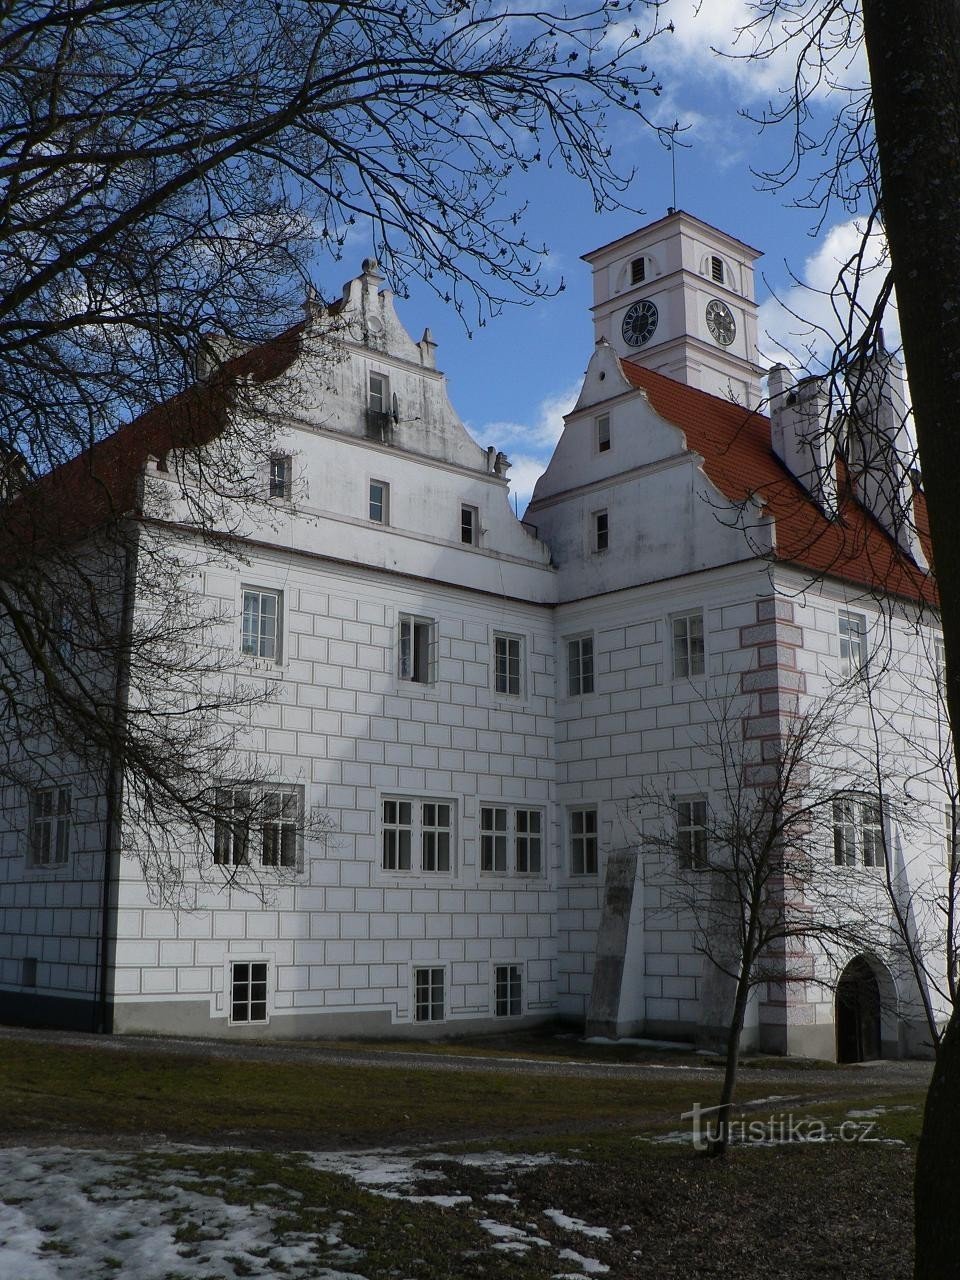 Κάστρο Žichovice, δυτικό τμήμα